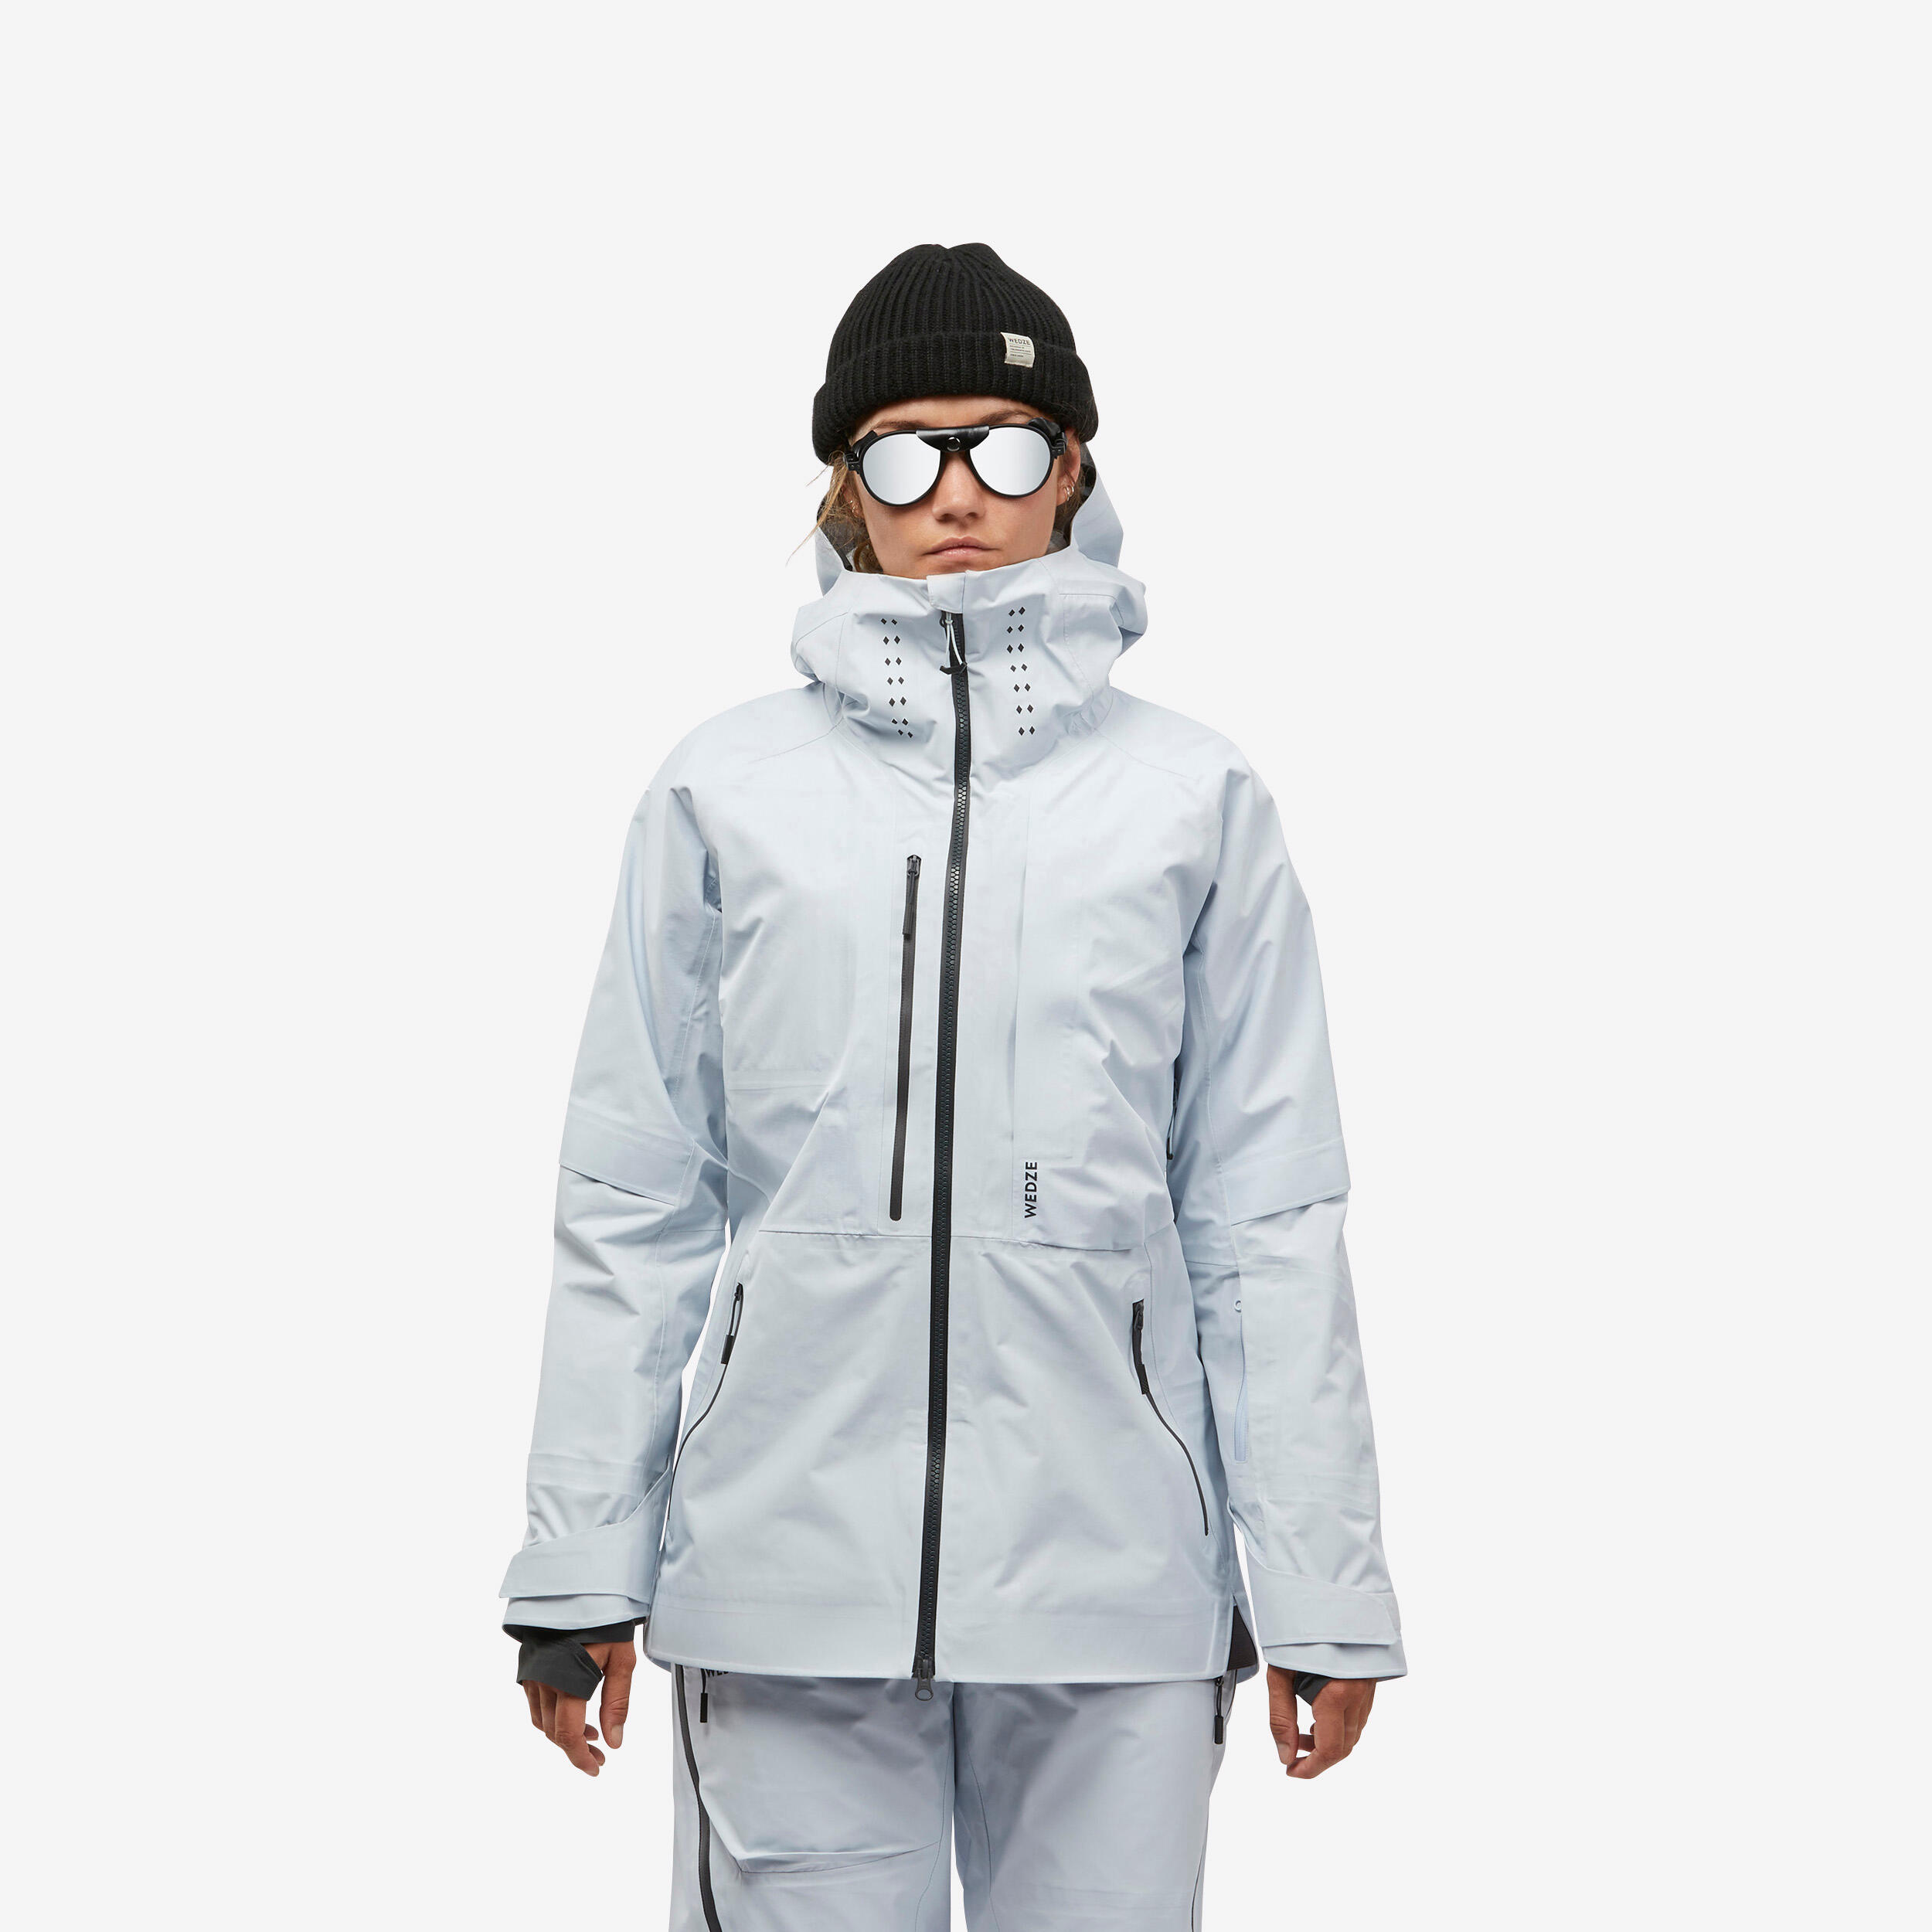 Women’s Winter Jacket - SH 900